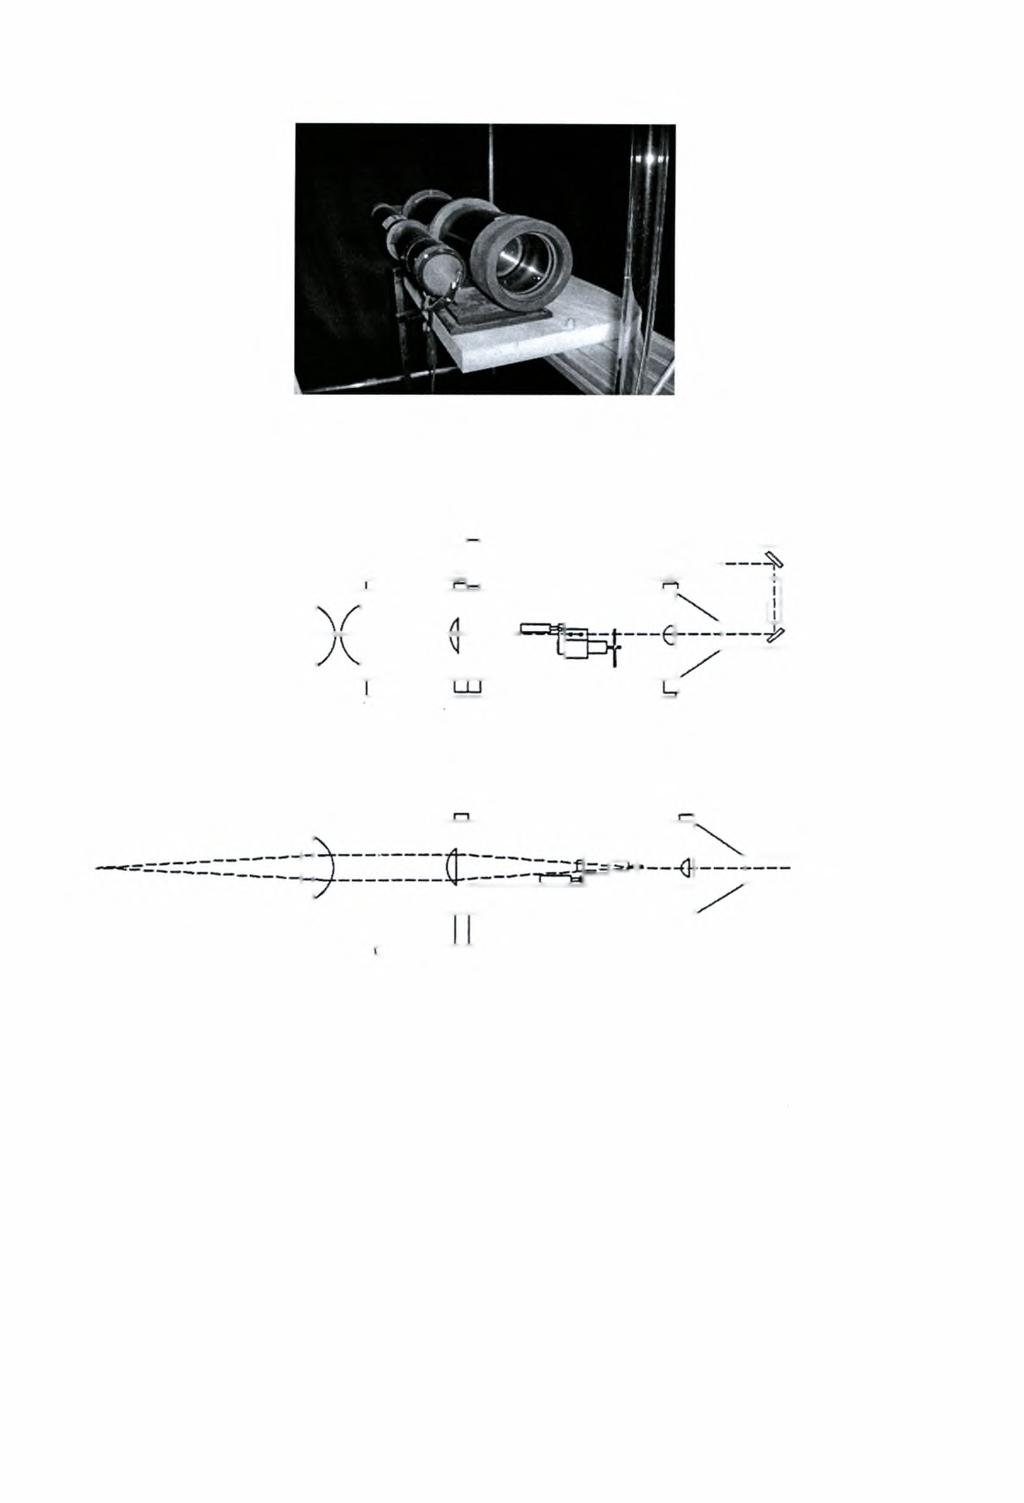 Σχήμα 3-1: Πομπός δέσμης Laser (Μοντέλο ΧΤΜ - 1100) Σχήμα 3-2: Οπτικό διάγραμμα πομπού δέσμης Laser